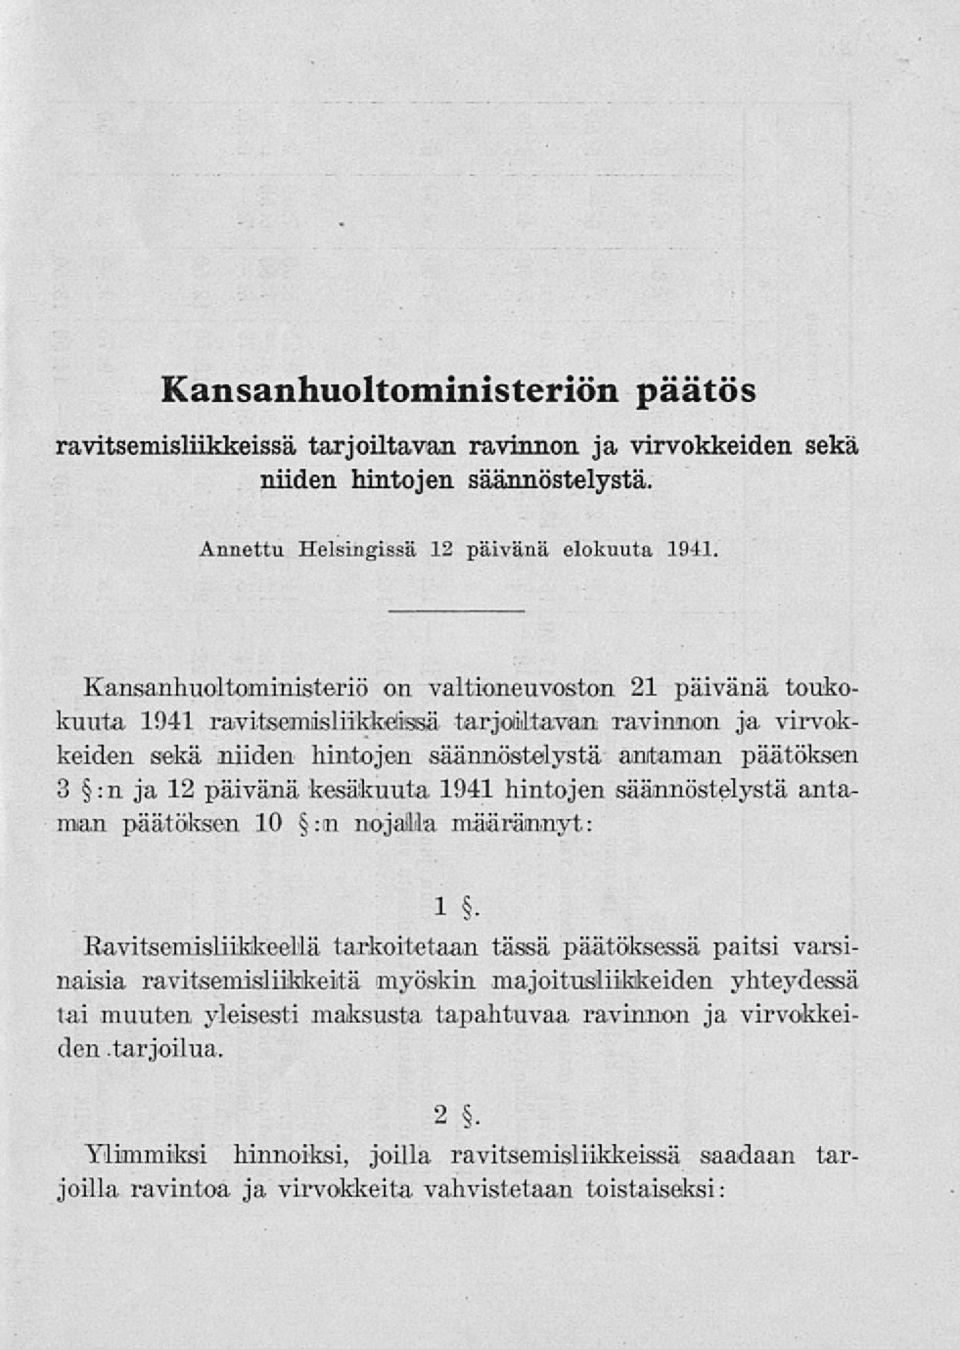 päivänä kesäkuuta 1941 hintojen säännöstelystä antaman päätöksen 10 :m nojalla määrännyt: 1 Ravitsemisliikkeellä tarkoitetaan tässä päätöksessä paitsi varsinaisia ravitsemisliikkeitä myöskin